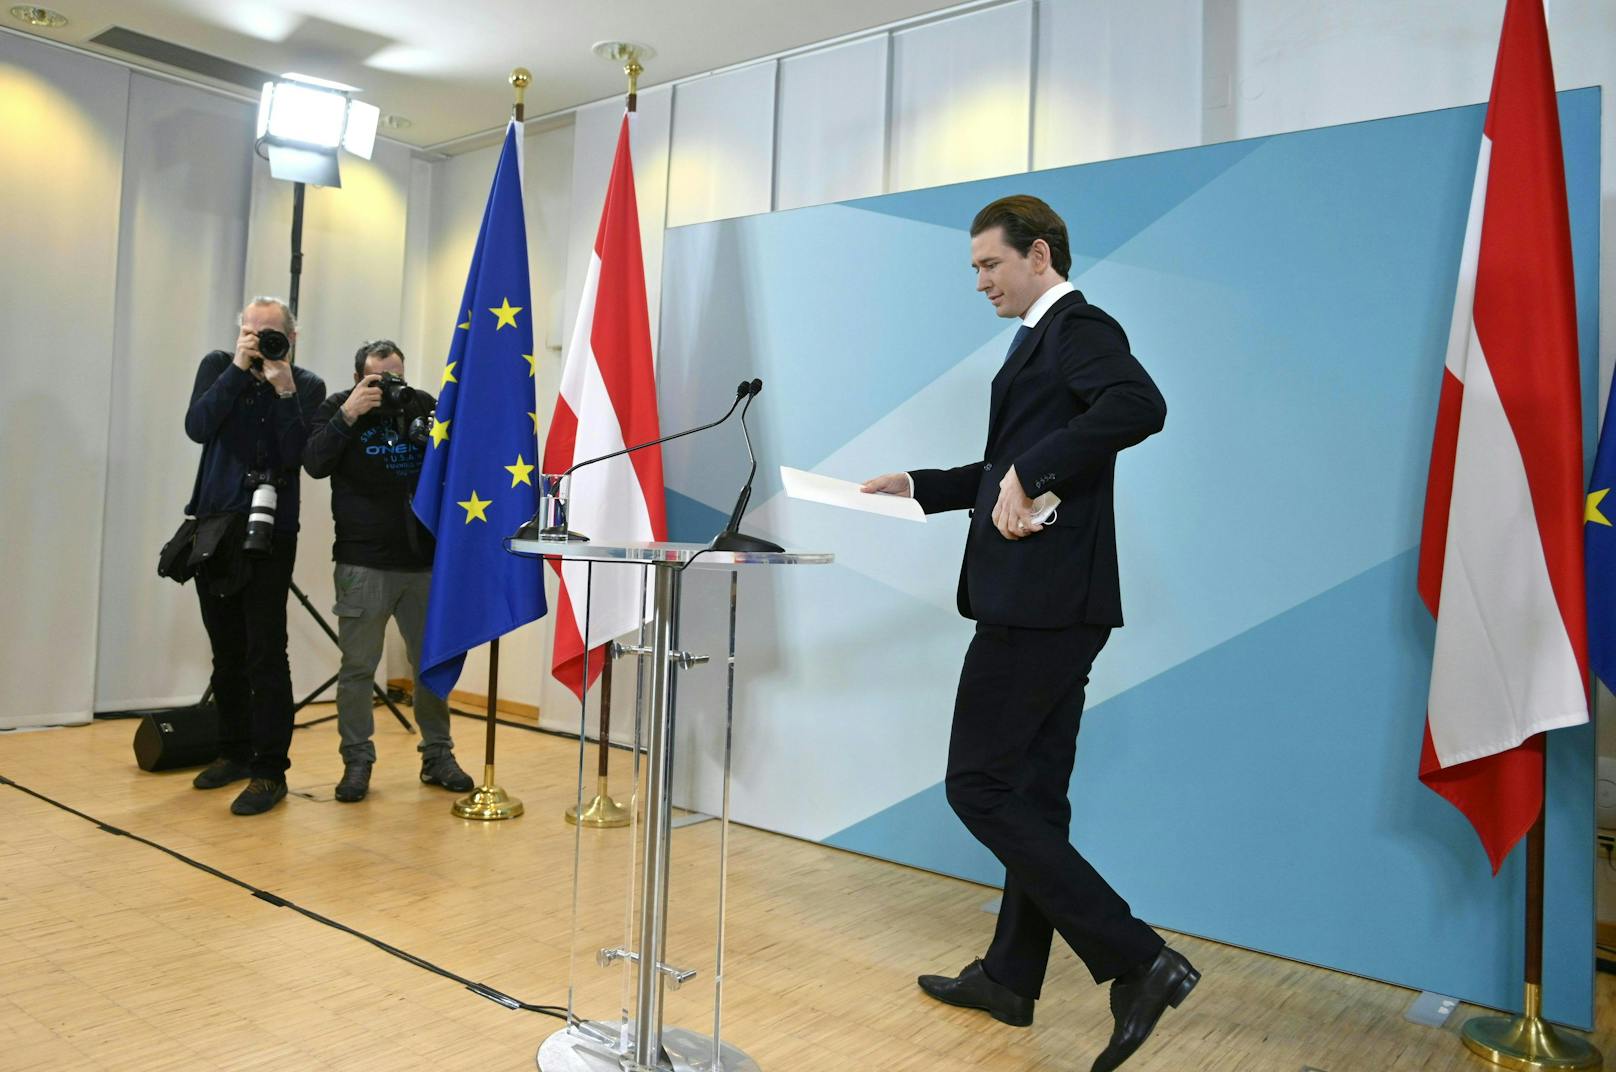 Noch-ÖVP-Chef Sebastian Kurz gab am 2. Dezember 2021 um 11:33 Uhr seine "persönliche Erklärung" ab, die exakt 17 Minuten dauerte und mit seinem politischen Abschied endete.